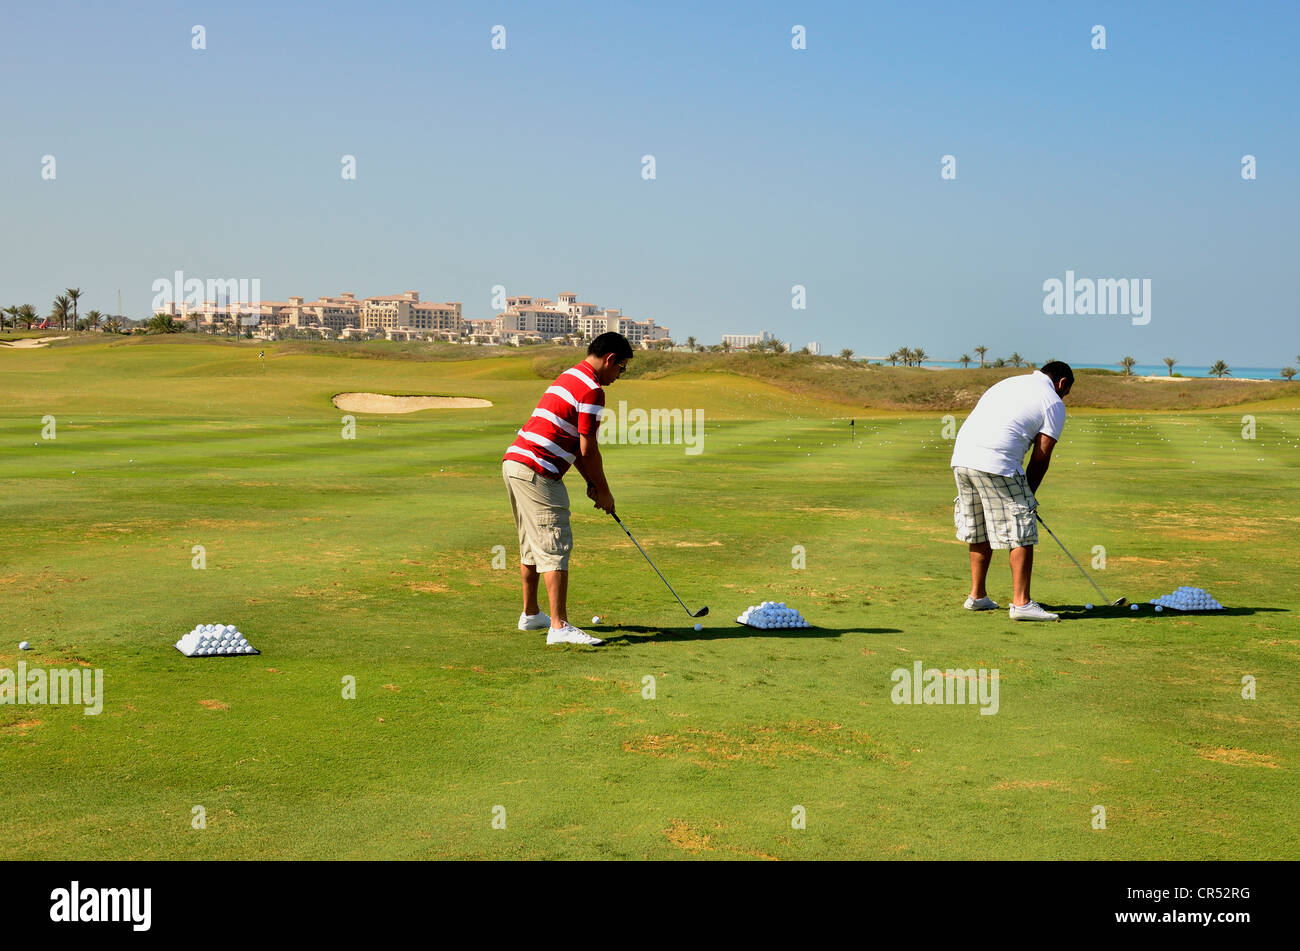 Los golfistas en el Saadiyat Beach Golf Club en la Isla de Saadiyat, Abu Dhabi, Emiratos Árabes Unidos, la Península Arábiga, Asia Foto de stock